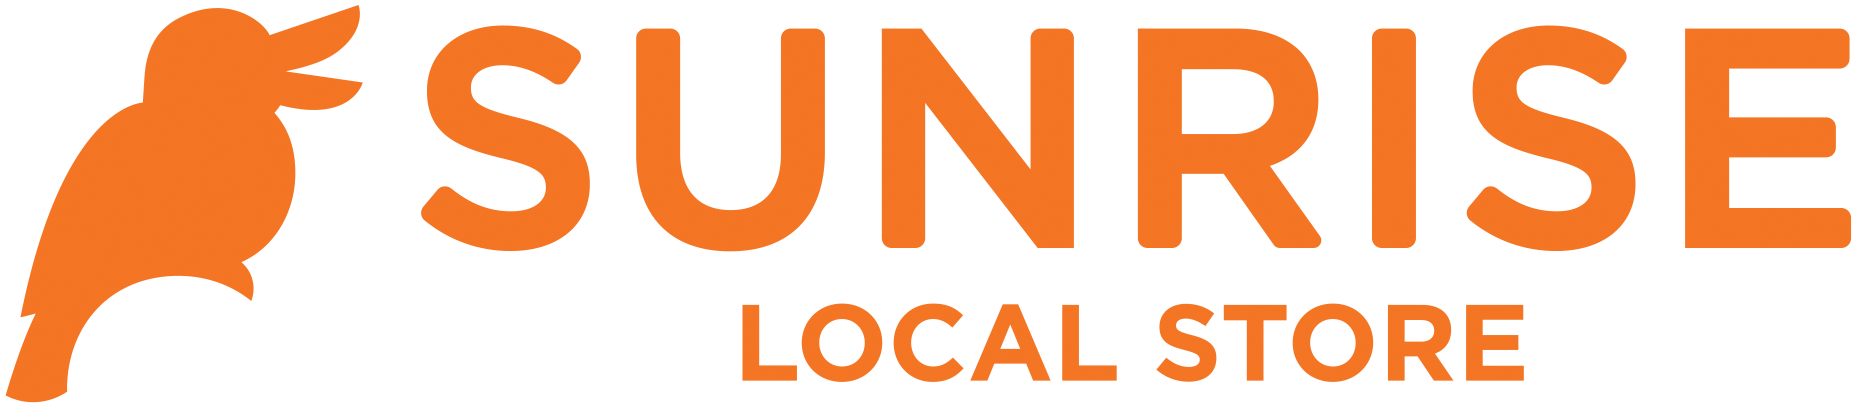 New_Sunrise_Horizontal_Logo_Orange